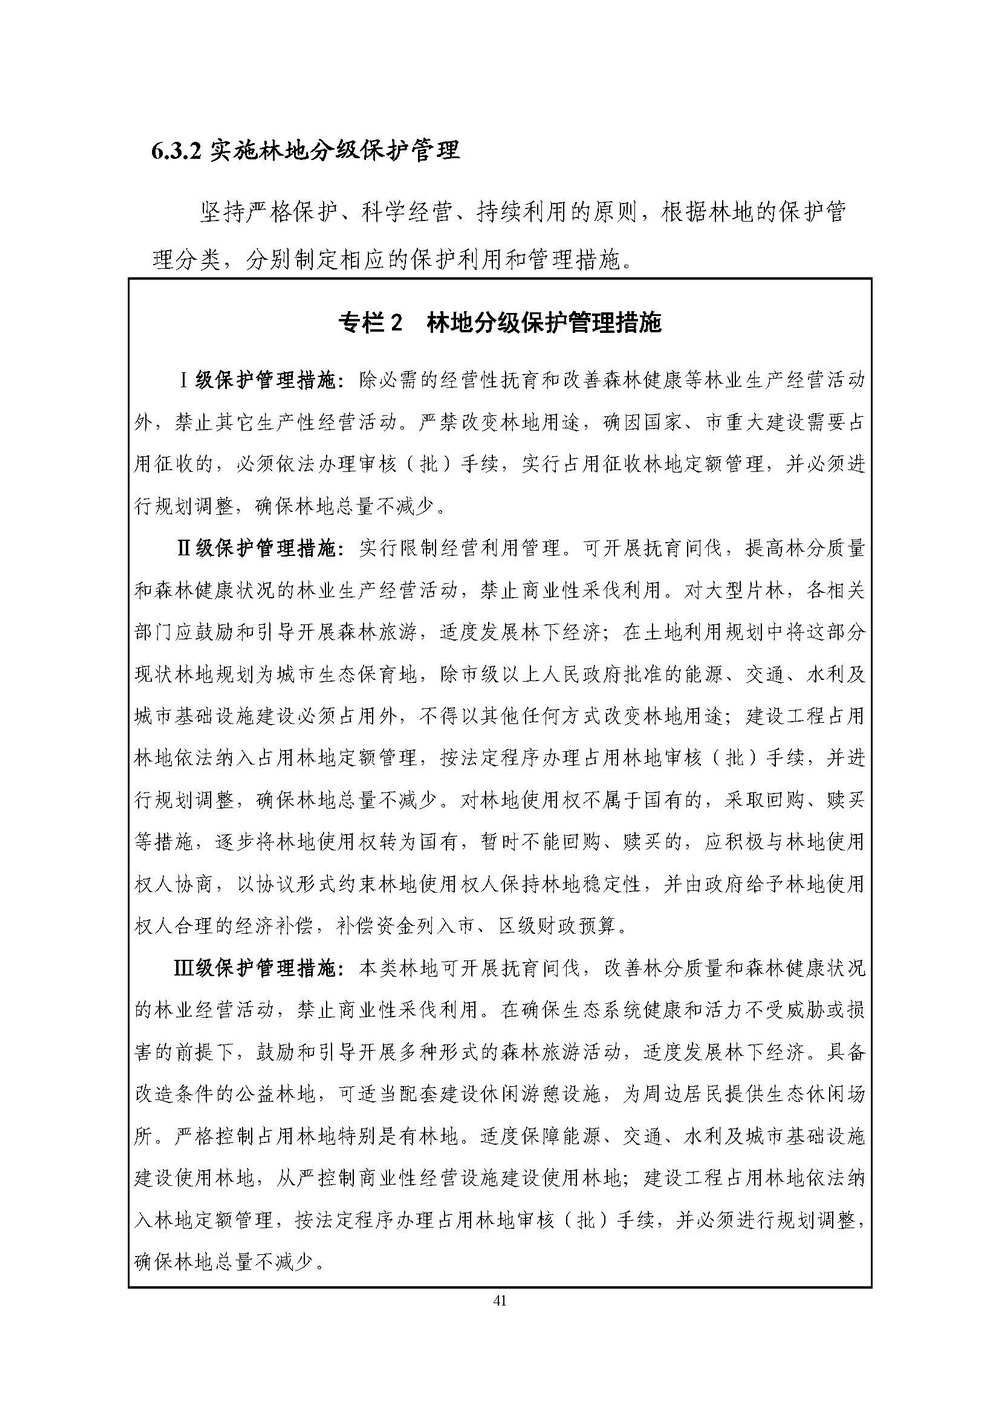 上海市森林和林地保护利用规划文本 公开稿 附图_页面_44.jpg